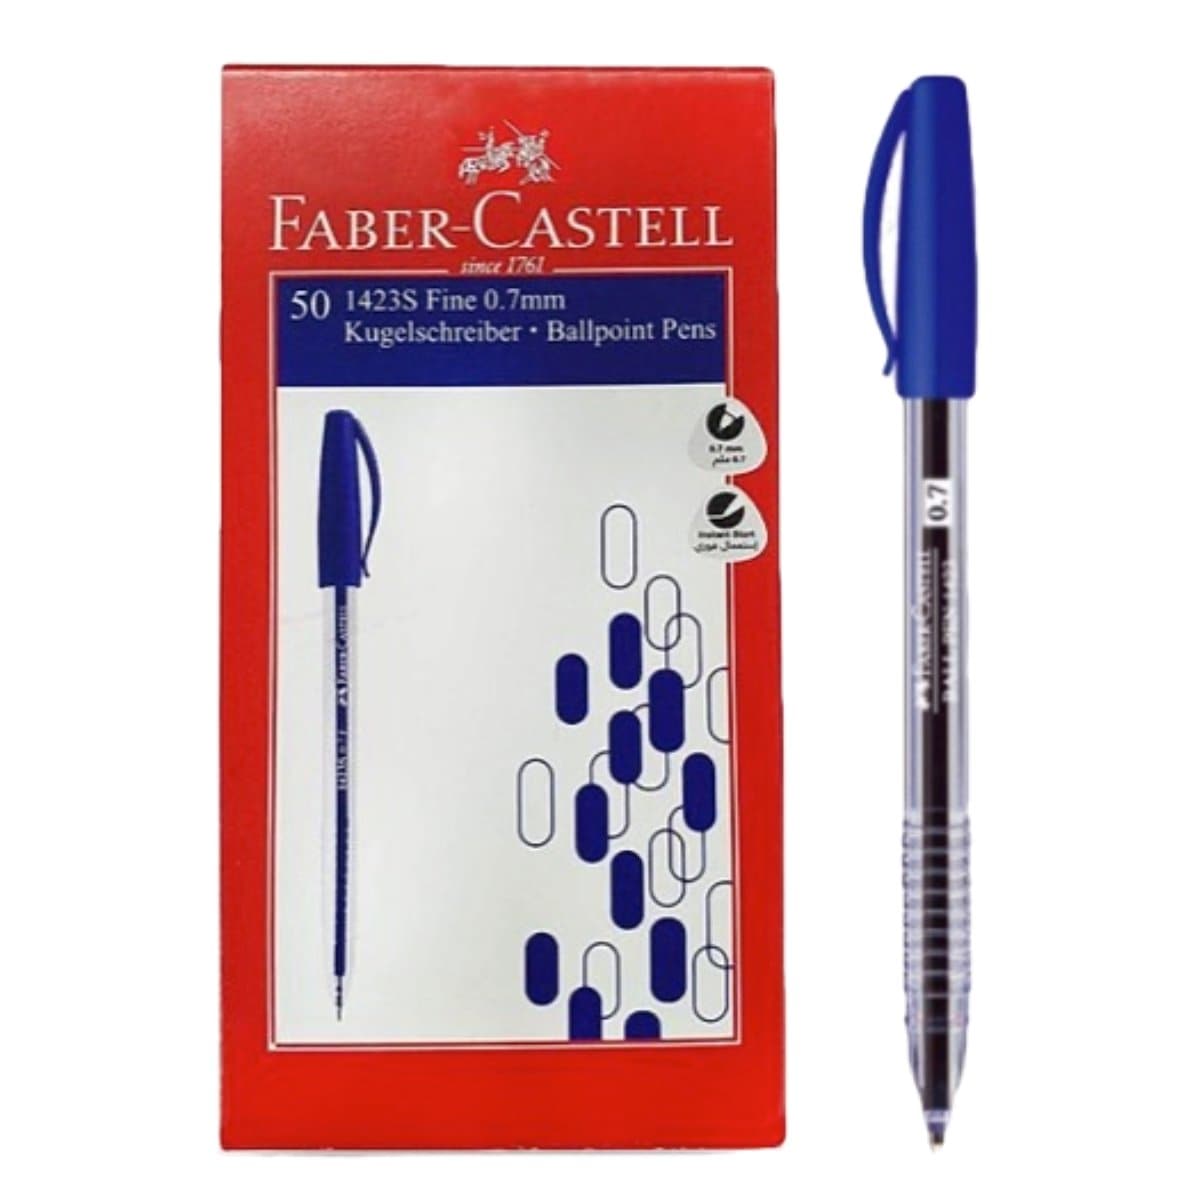 Faber Castell Ballpen 1423, 0.7mm, 50/box, Blue